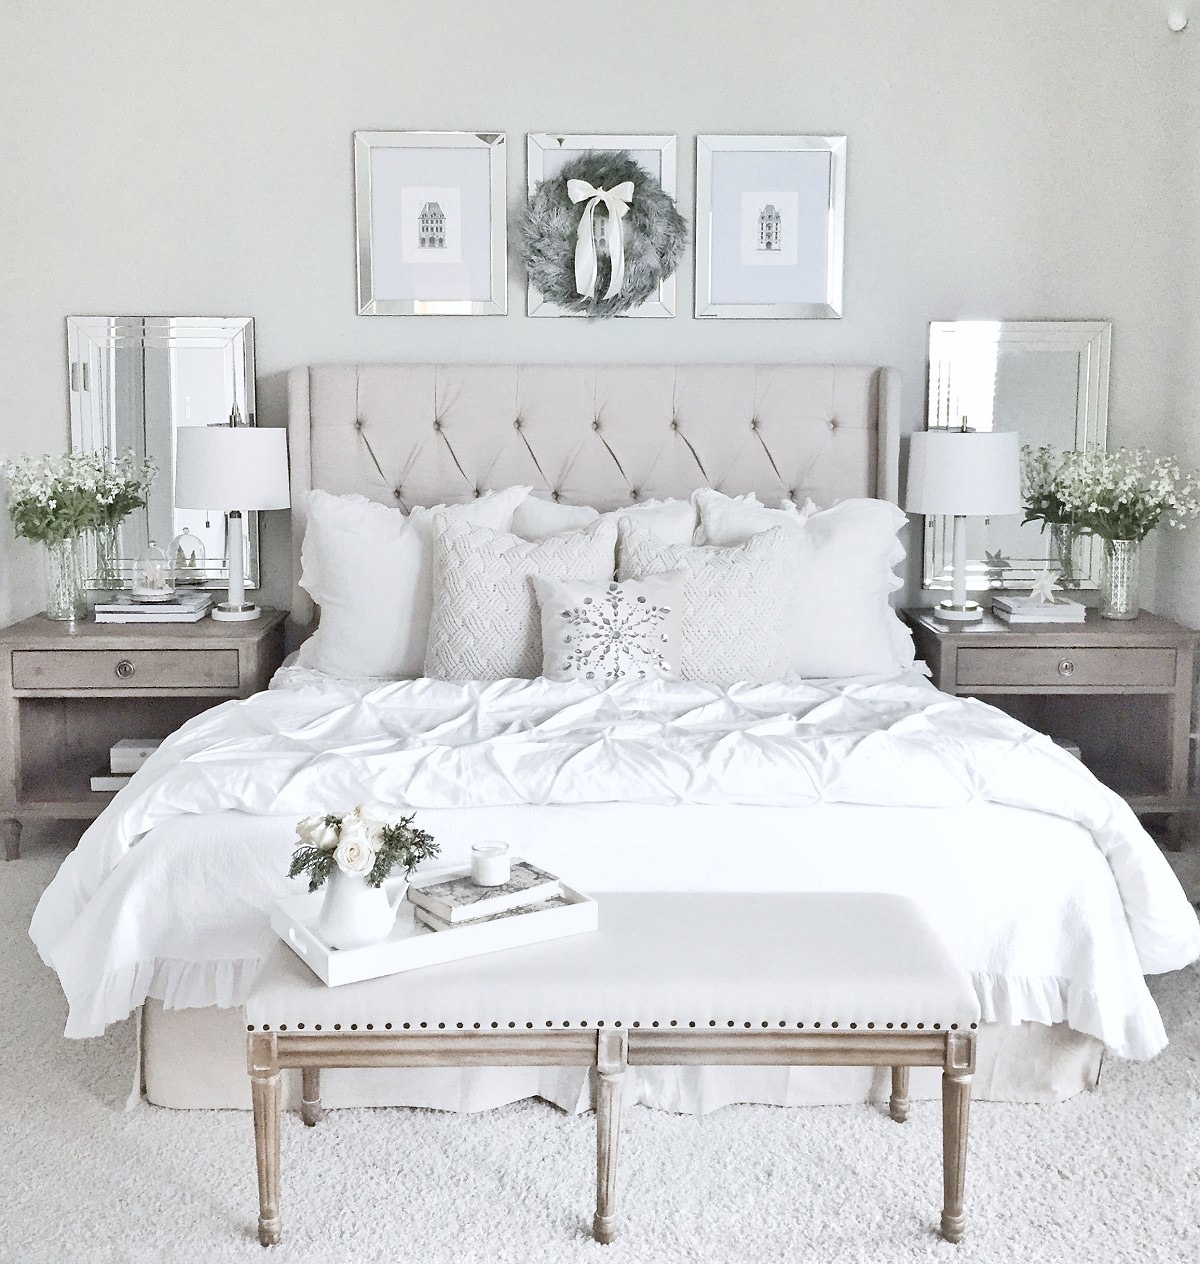 اتاق خوابی فنگ شویی شده ای که برای رعایت تعادل، وسایل آن مانند آباژور، آینه، گلدان و کوسن به صورت جفت و متقارن چیدمان شده است